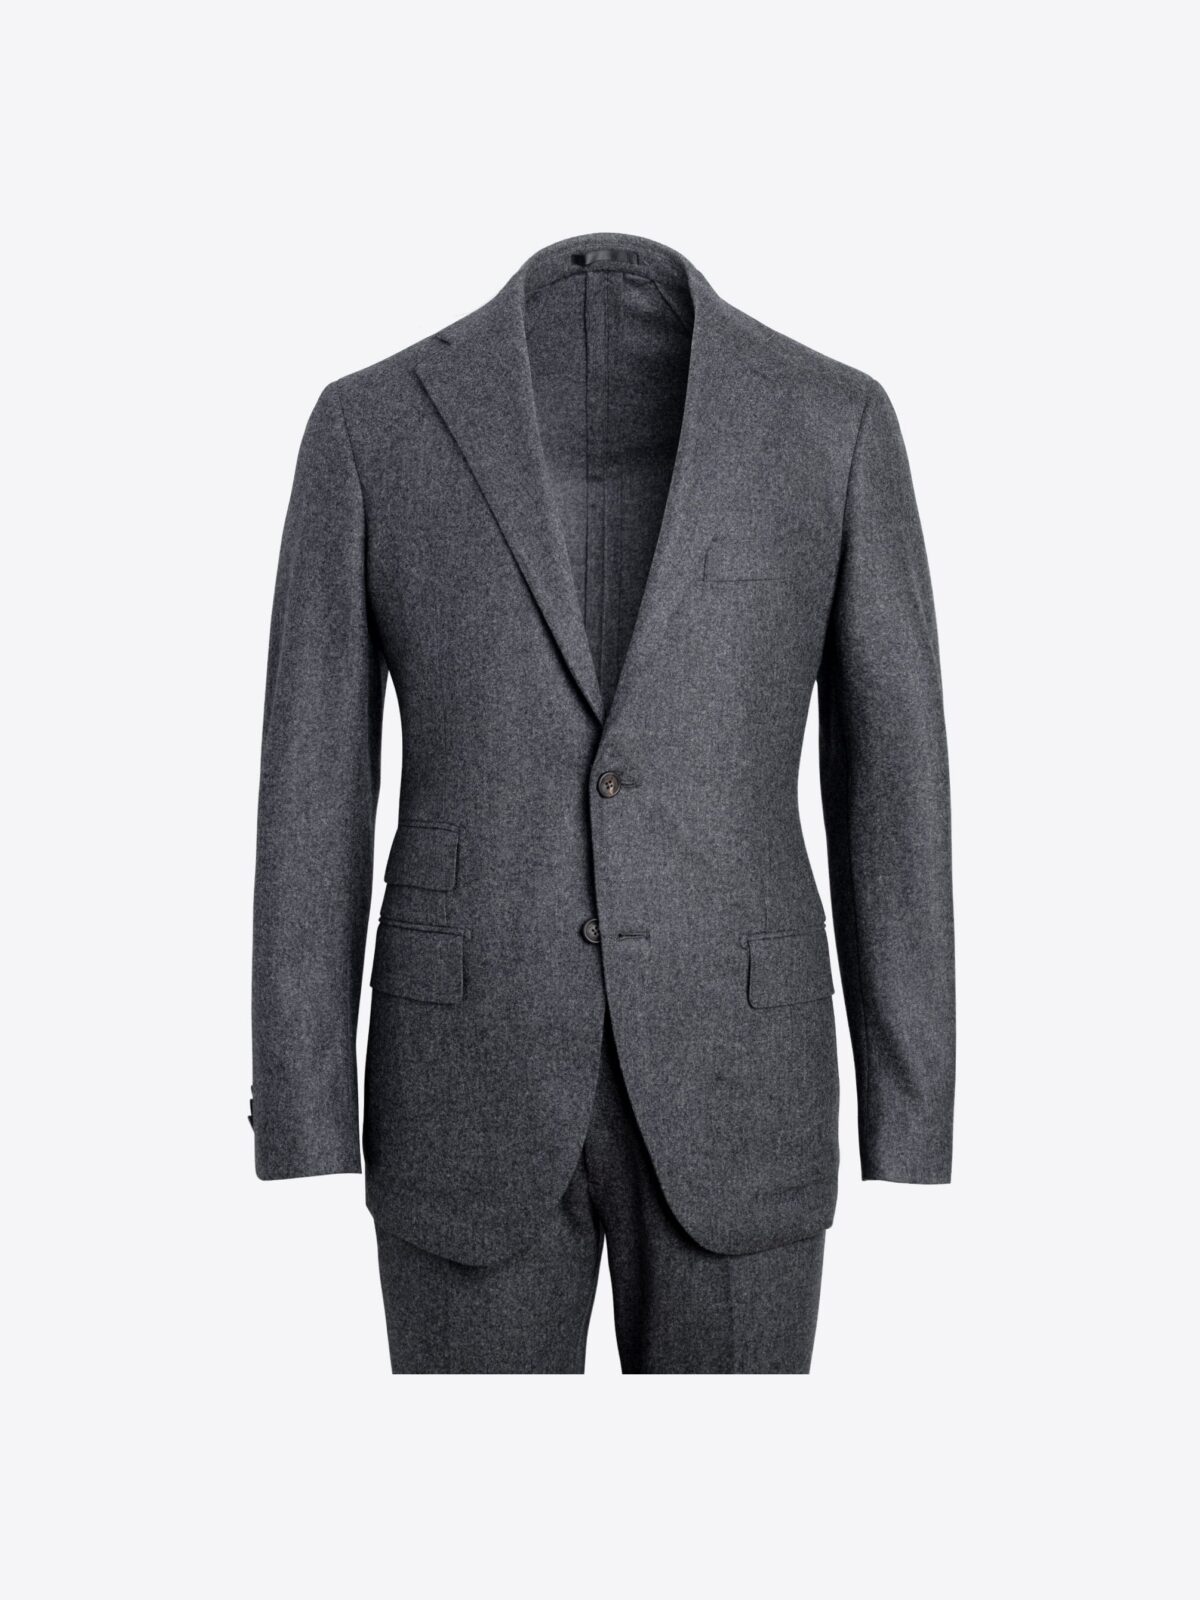 VBC Grey Wool Flannel Allen Suit